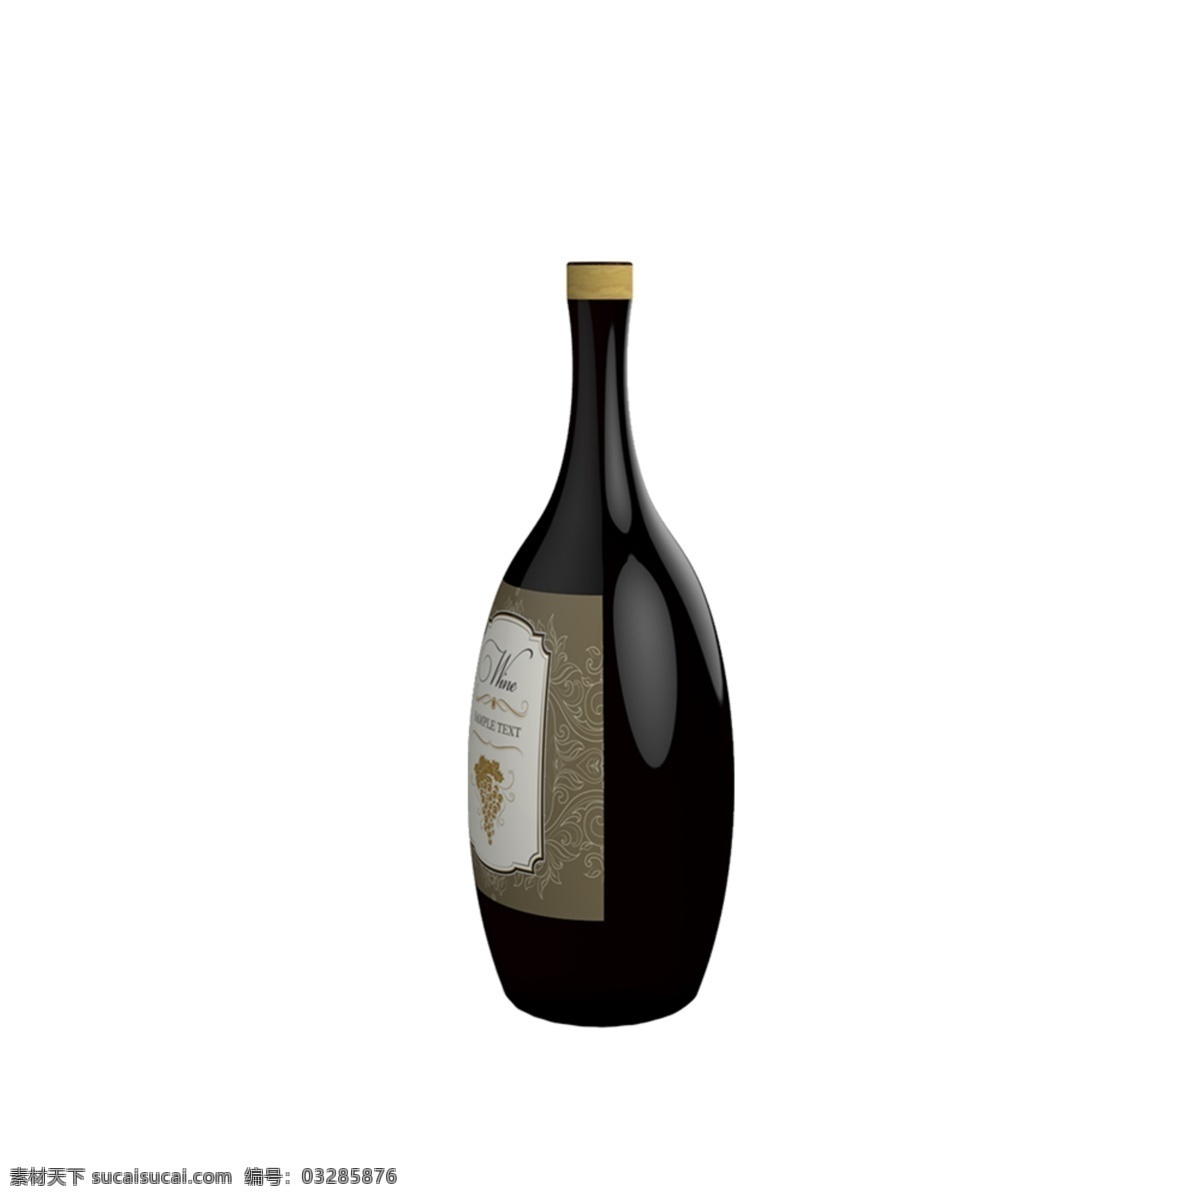 葡萄酒 瓶子 免 扣 酒瓶 红酒 酒 酒瓶图案 洋酒 手绘酒瓶 手绘酒瓶图案 手绘葡萄酒瓶